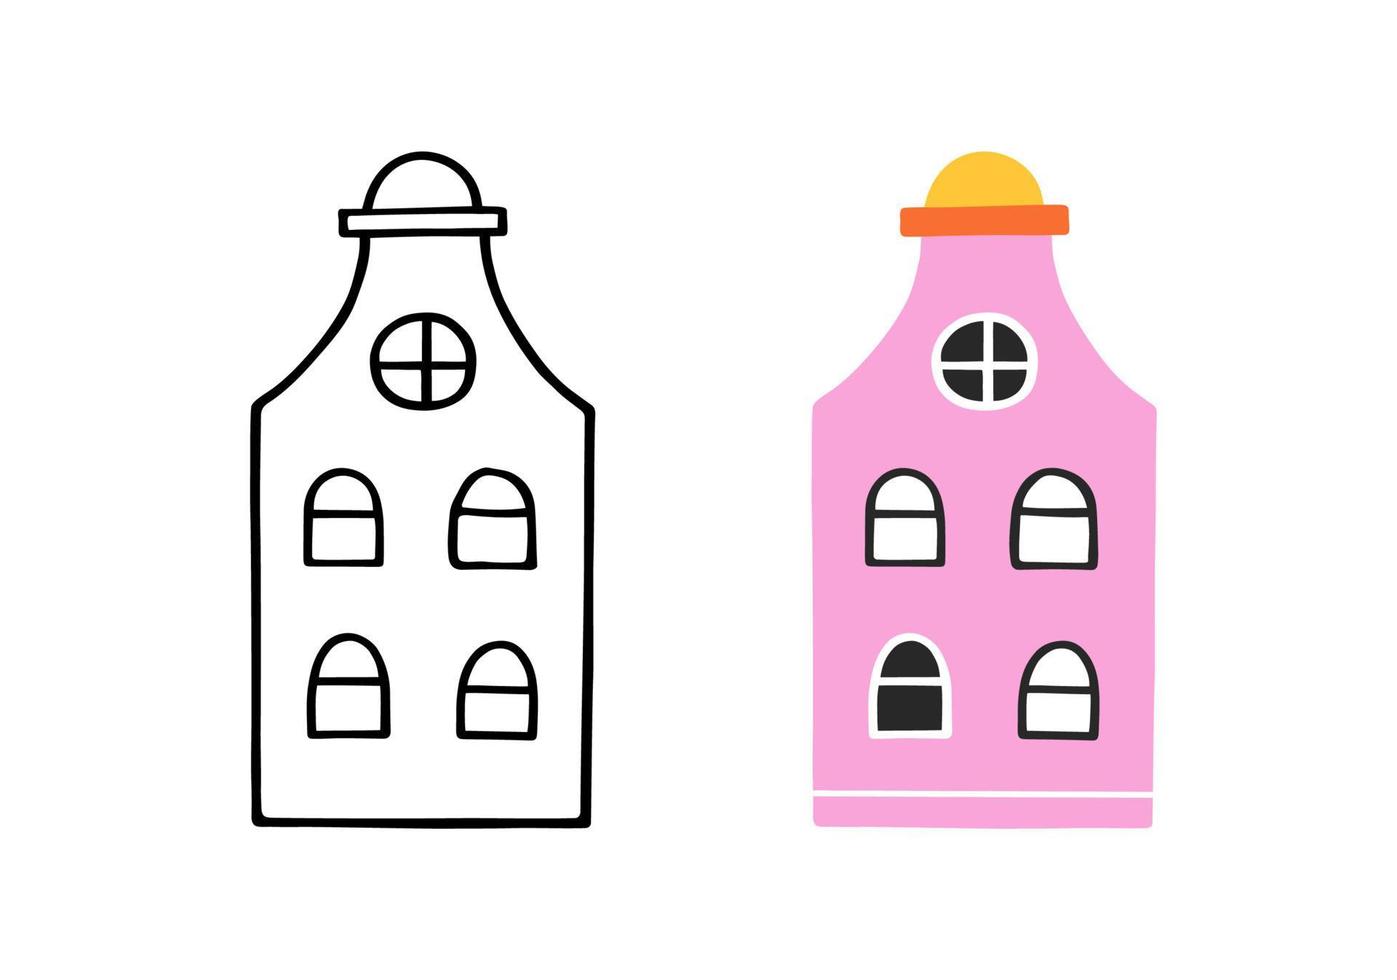 casa carina in stile disegnato a mano. casa di contorno di doodle. illustrazione vettoriale piatta.